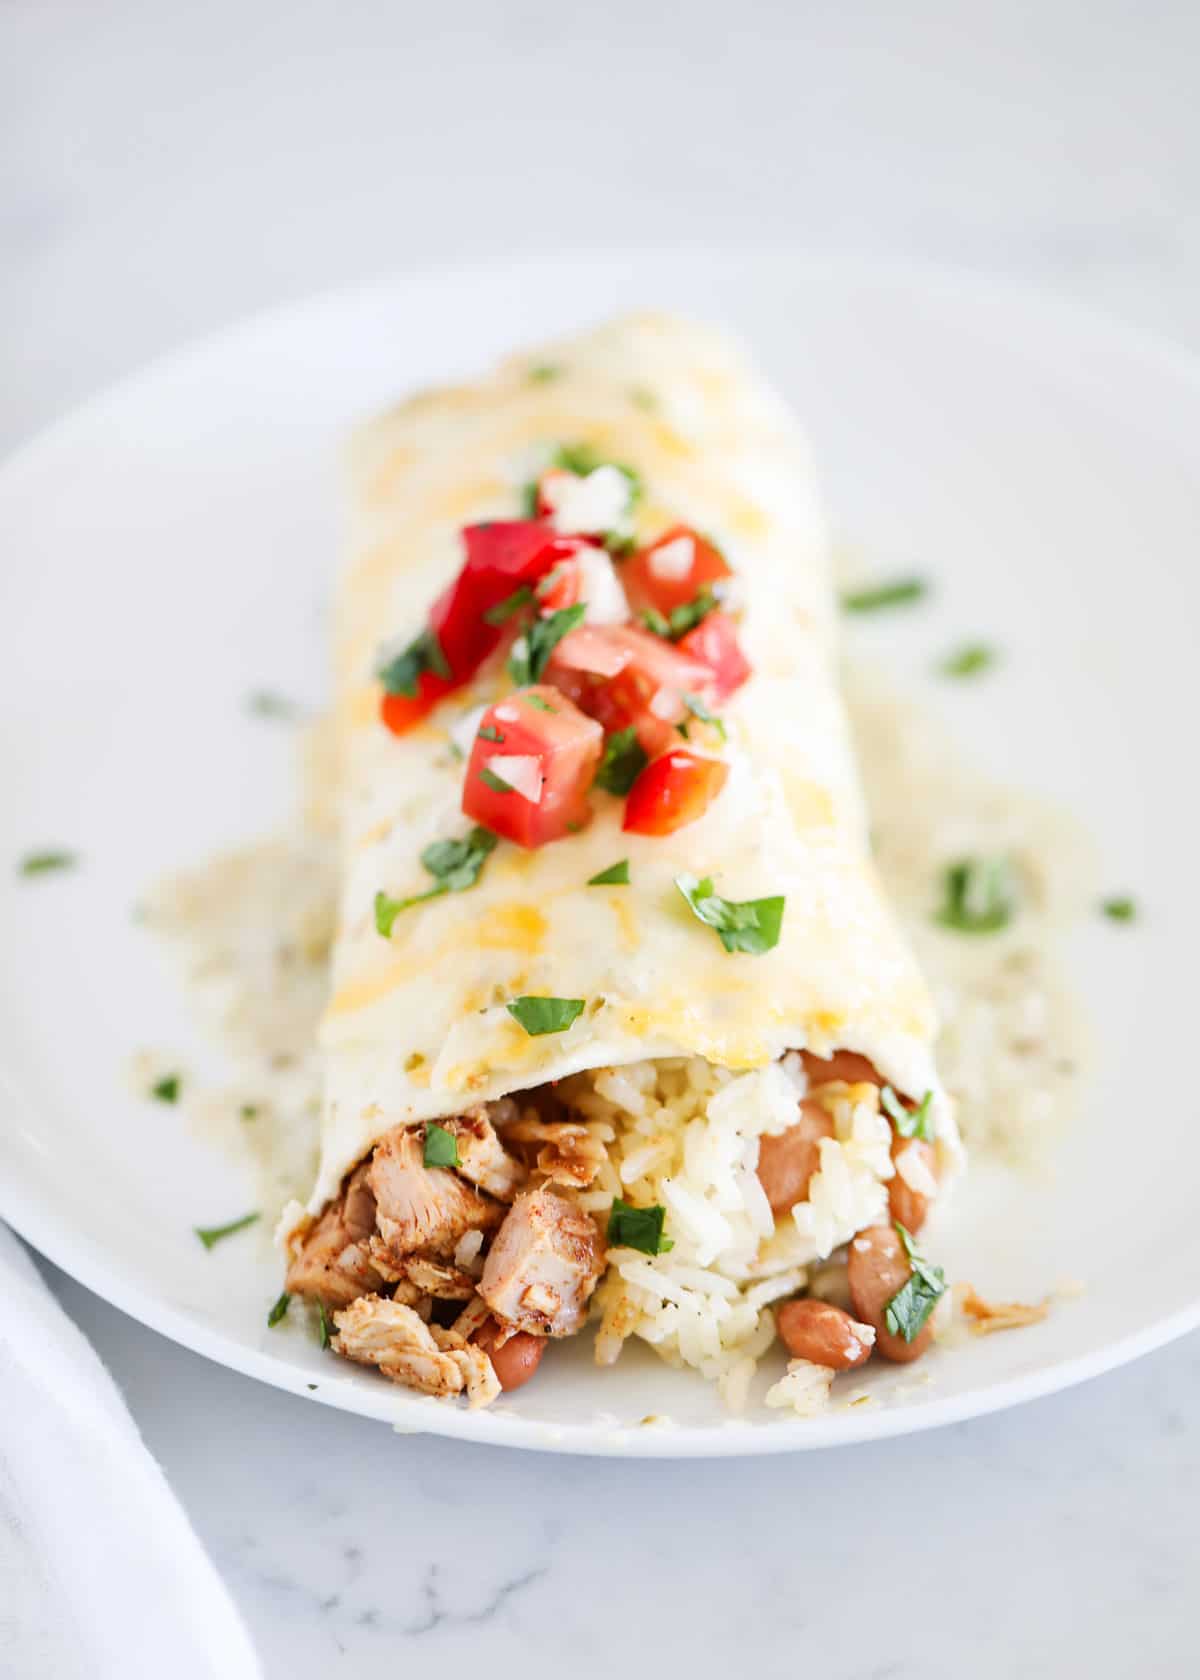 Chicken burrito on white plate.